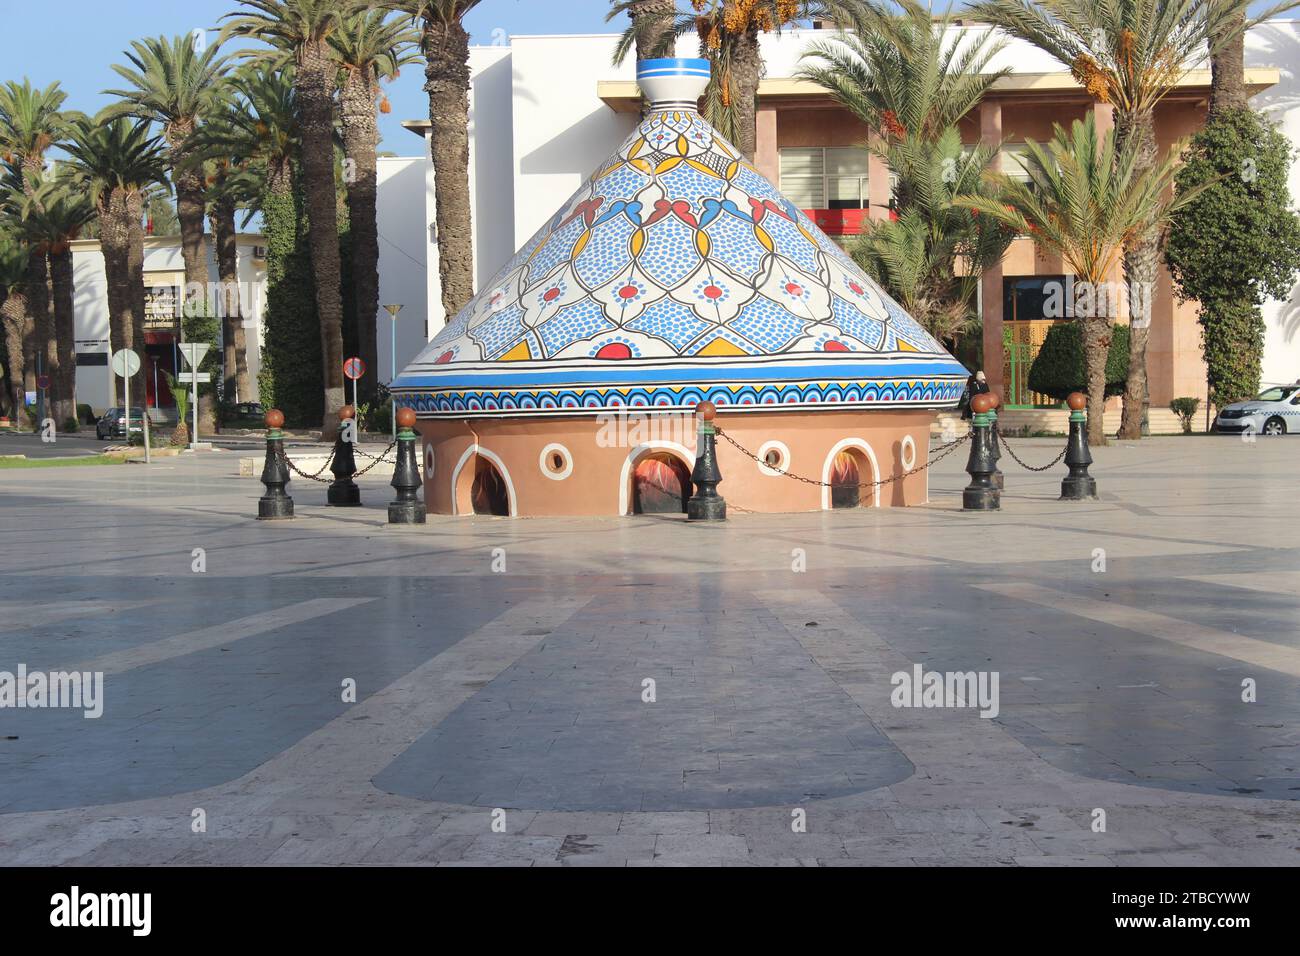 Die riesige Keramiktagine in der marokkanischen Stadt Safi, ein historisches Denkmal, das zuvor im Guinness-Buch der Rekorde aufgeführt war und als die größte Tagine der Welt anerkannt wurde. Stockfoto